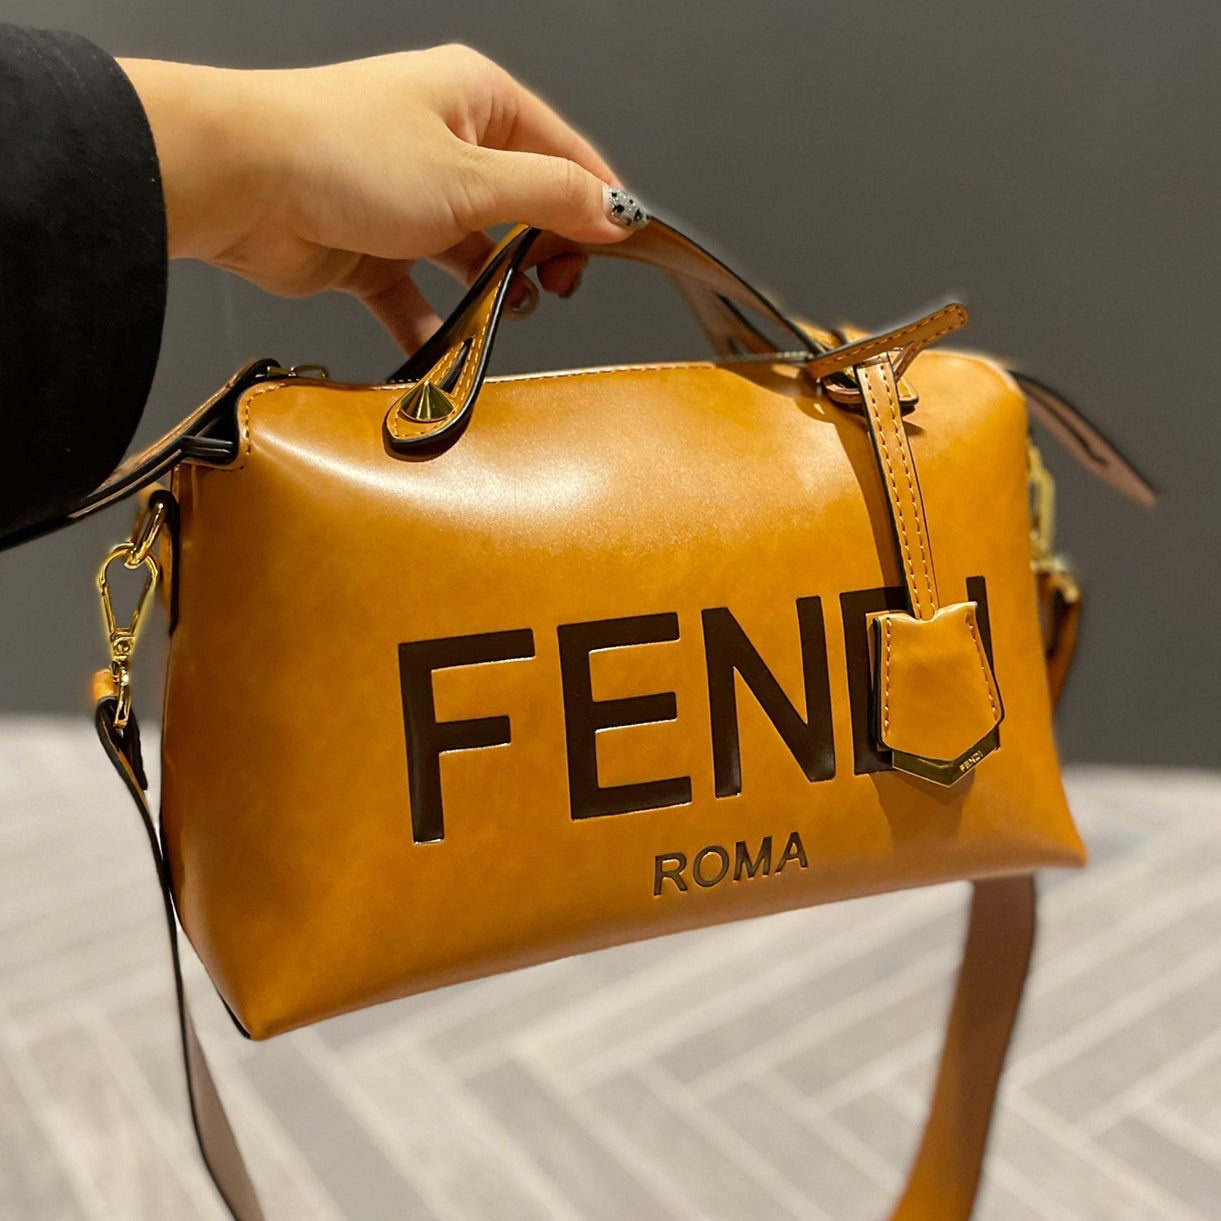 FENDI FF Hot Sale Letter Printing Women's Shopping Handbag S